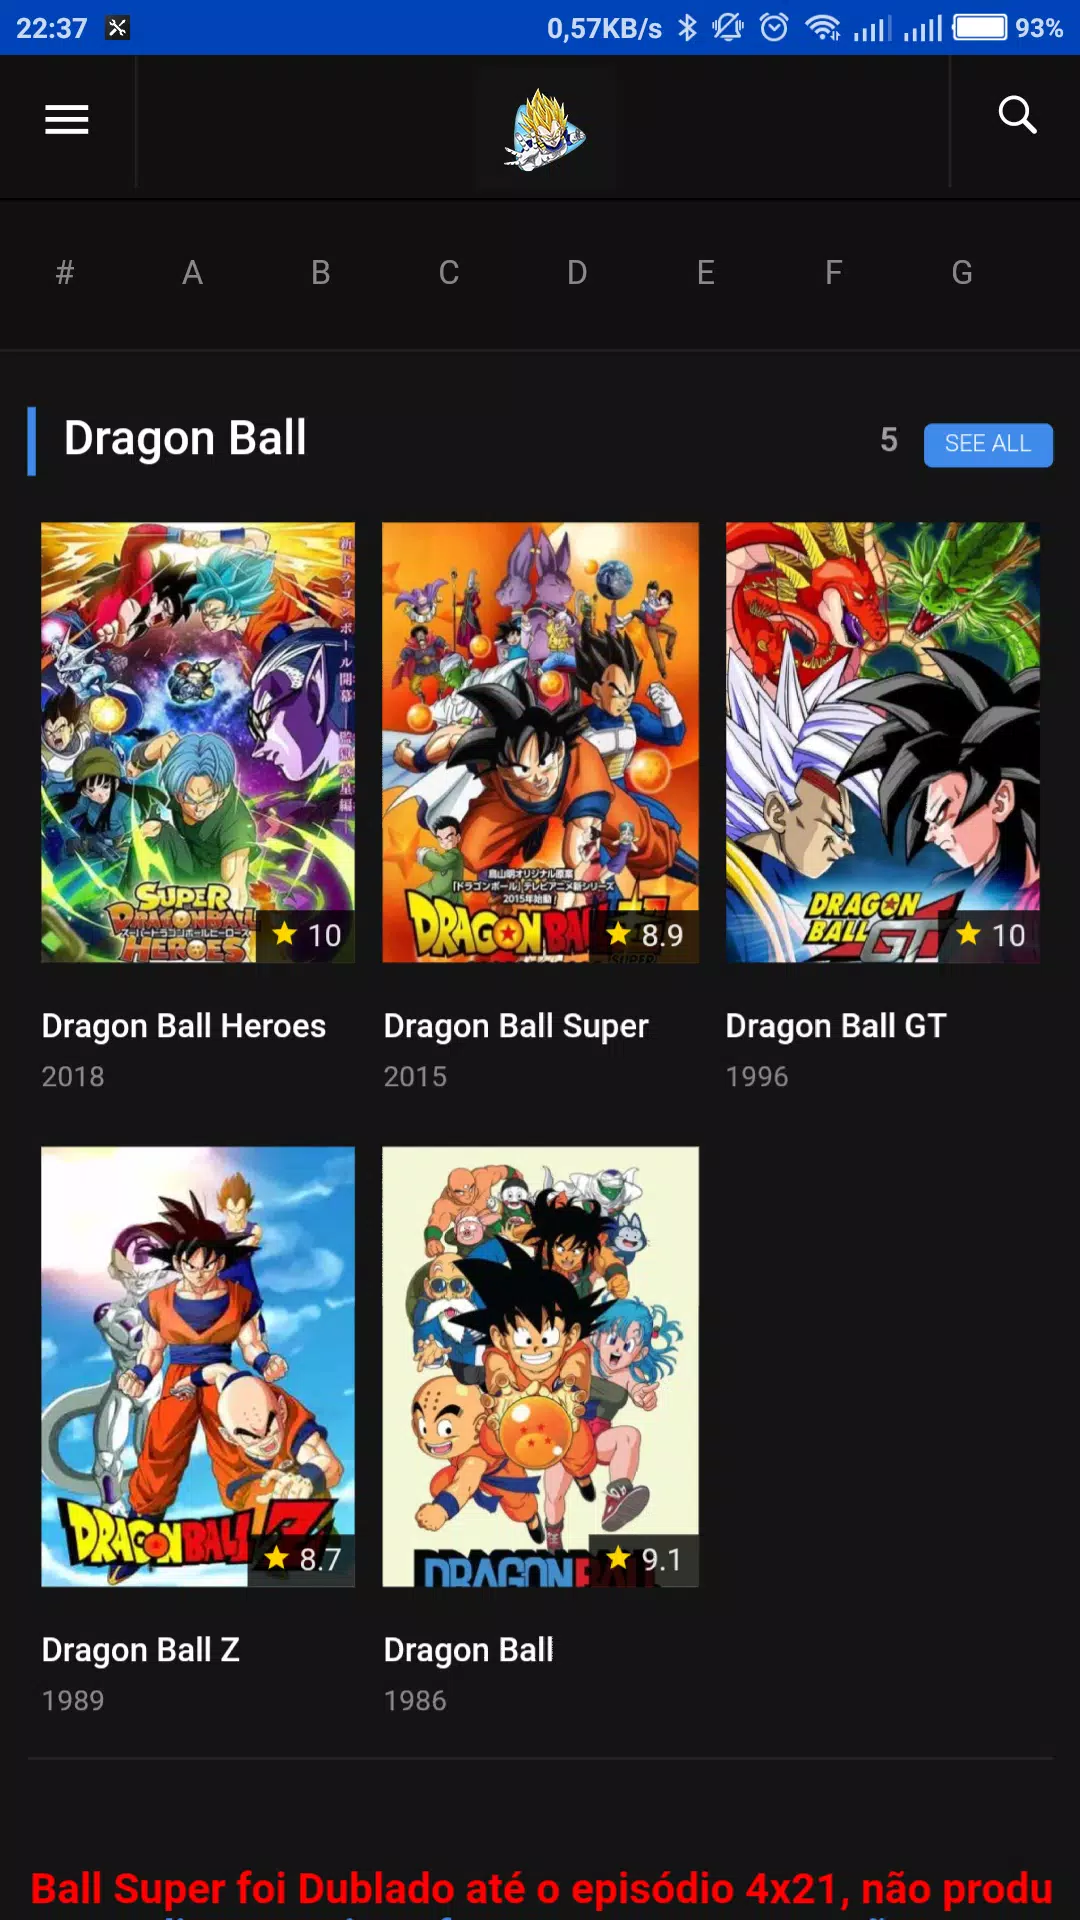 Super Dragon Ball Heroes - Legendado - todos os ep - assistir online